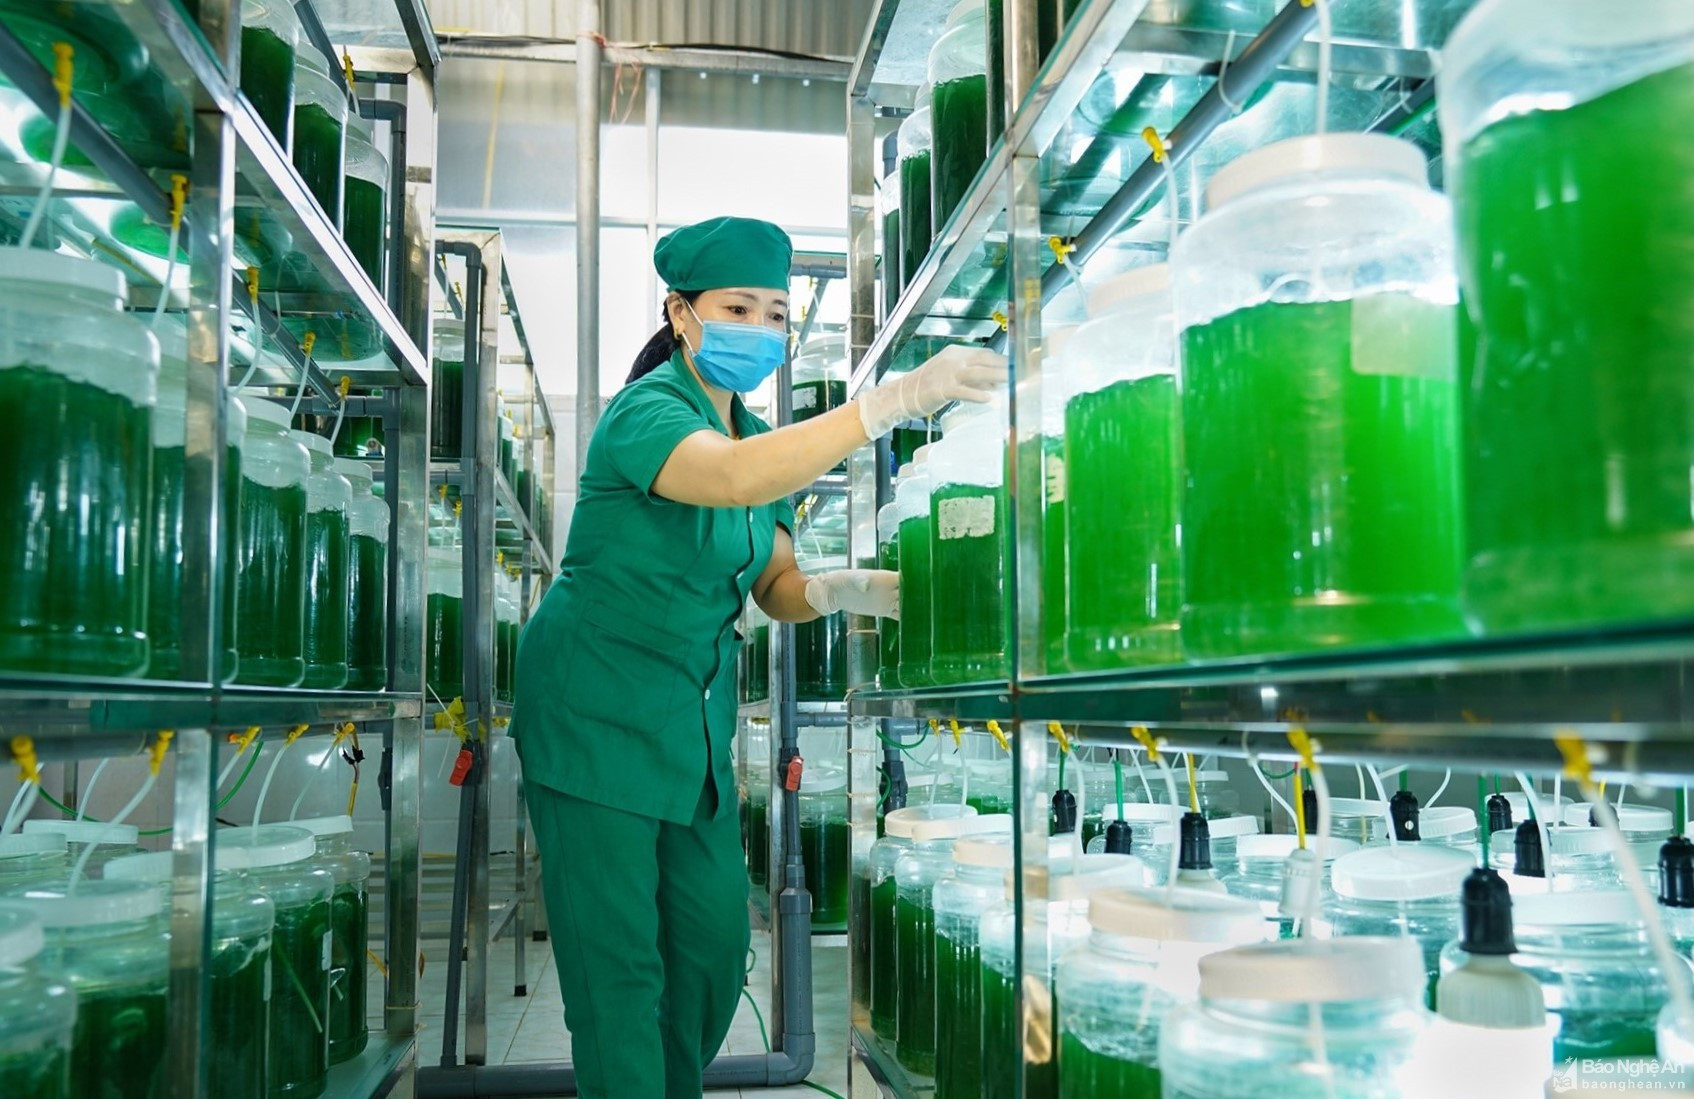 Sản xuất tảo xoắn ở Công ty của Công ty Công ty cổ phần Khoa học Công nghệ Tảo VN  ở Quỳnh Lưu, ảnh Trần Duy Ngoãn.jpeg